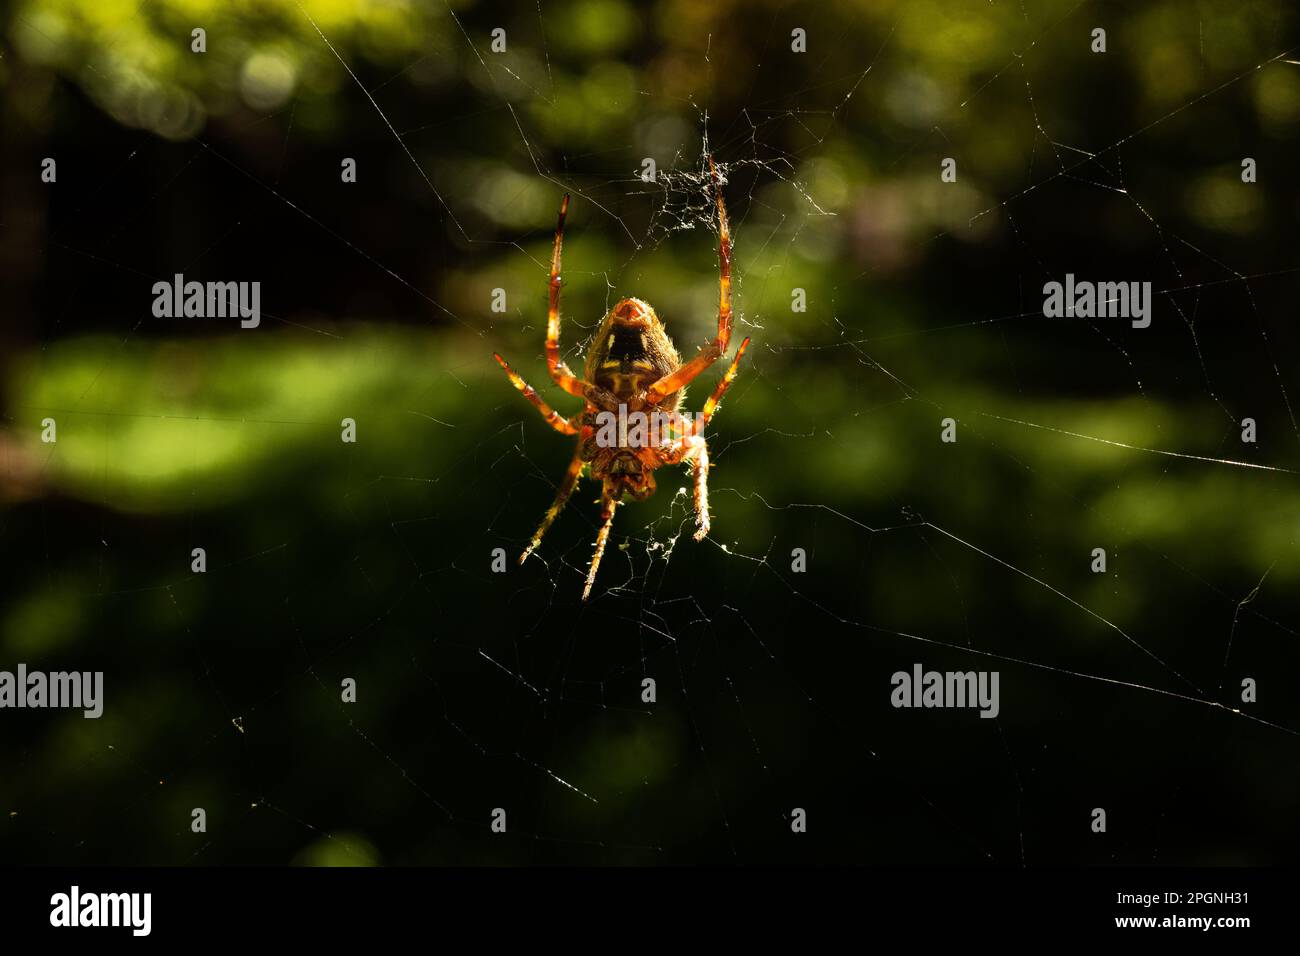 Un European Garden Spider illuminato dal sole, scientificamente conosciuto come Araneus diadematus, è catturato in un primo piano sospeso a testa in giù nella sua rete. La spide Foto Stock